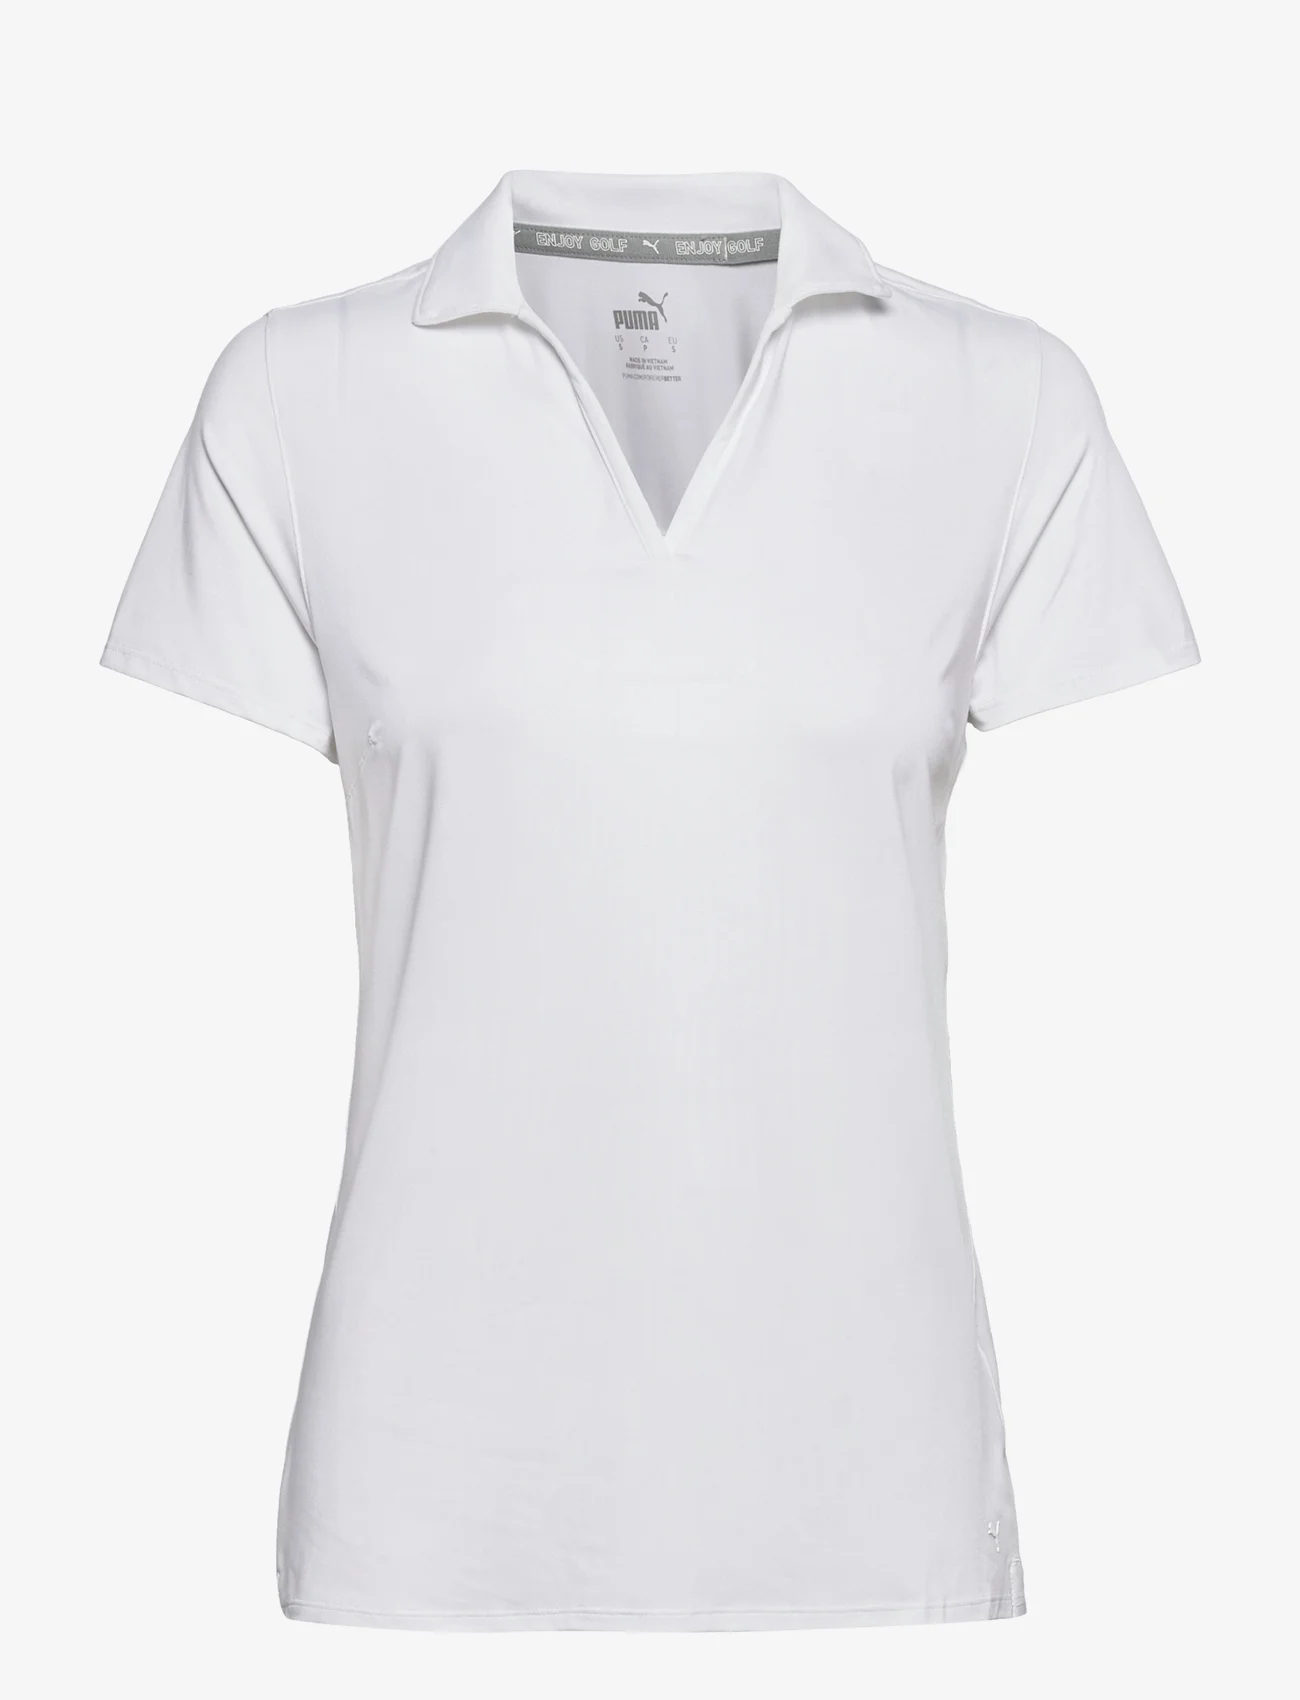 PUMA Golf - W Cloudspun Coast Polo - t-shirt & tops - bright white - 0